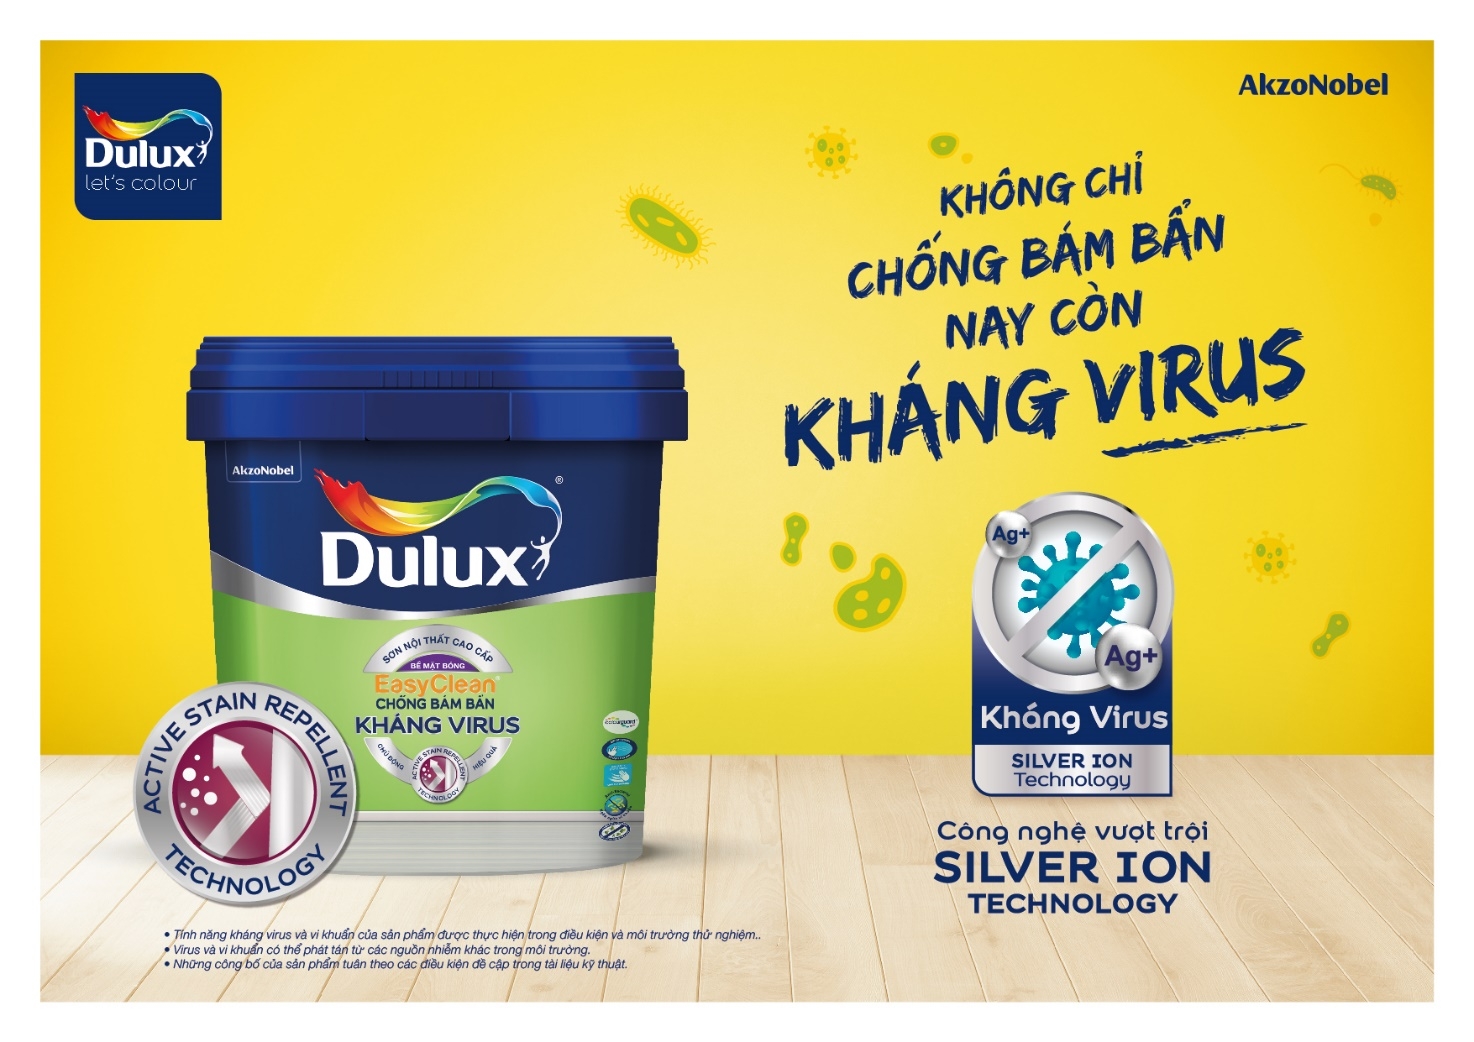 Dulux ra mắt giải pháp sơn kháng virus và vi khuẩn bảo vệ sức khỏe người tiêu dùng